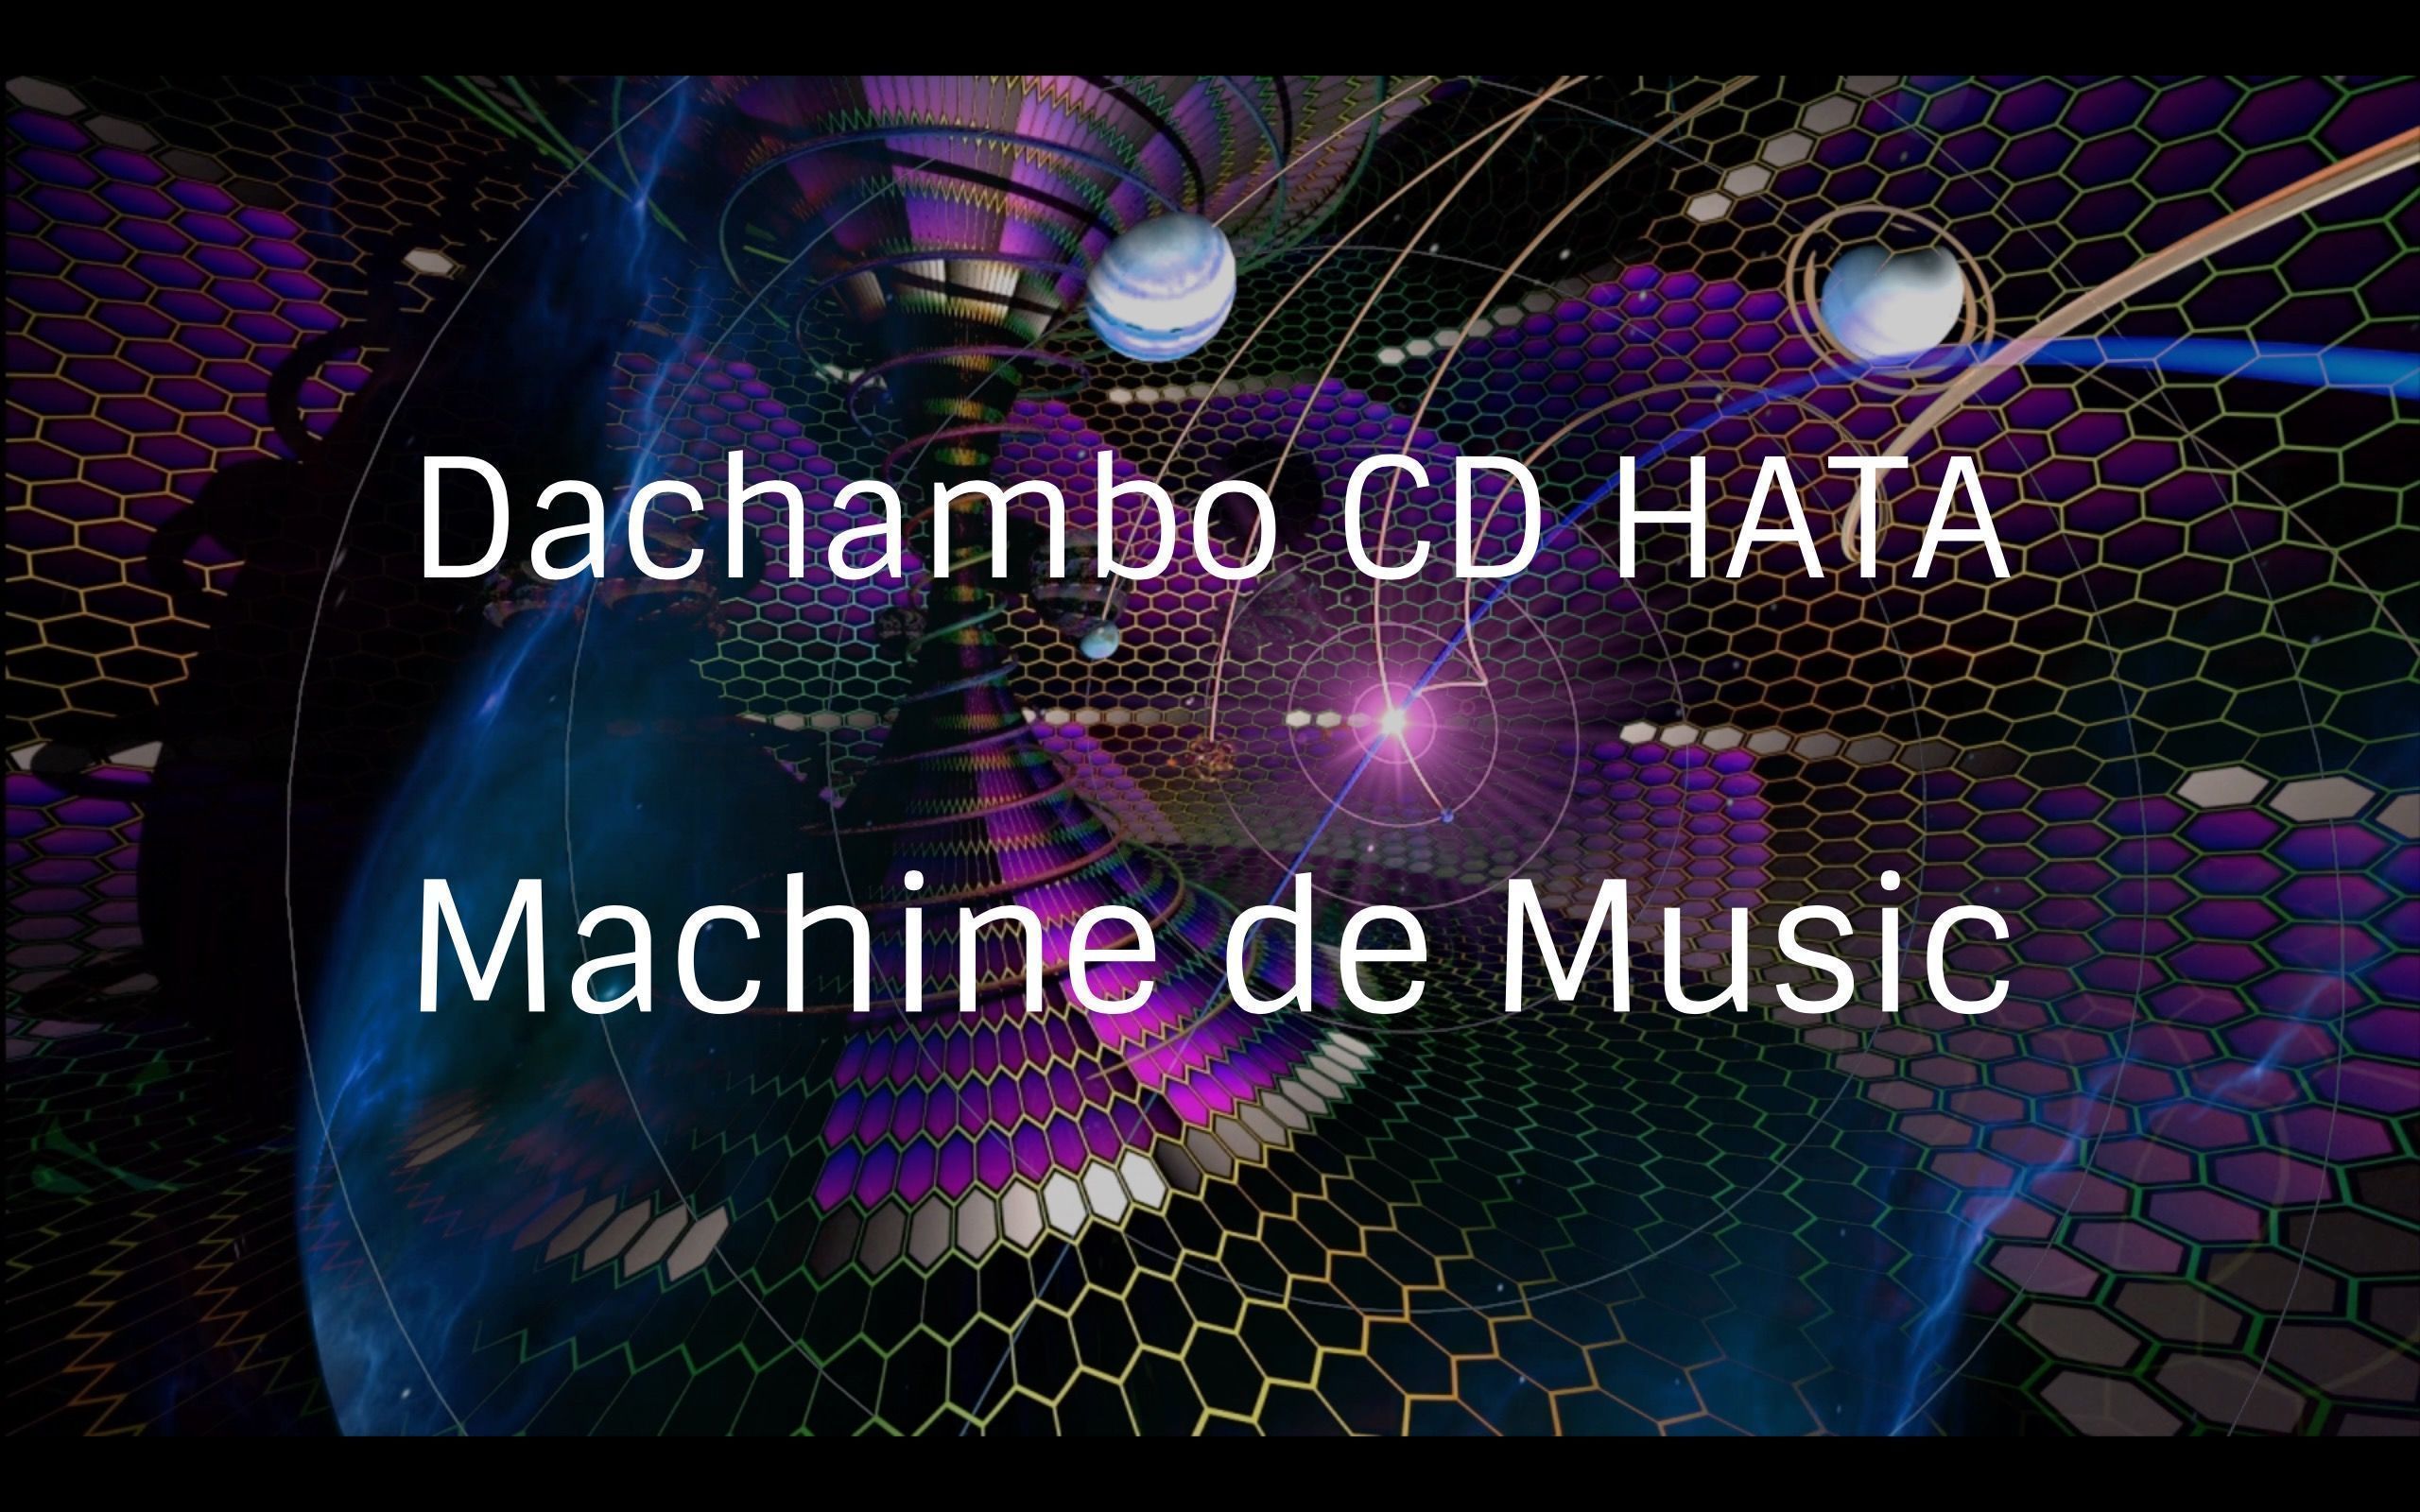 Dachambo CD HATAのMachine de Music コラムVol.55 
楽器フェアは楽器好きのディズニーランド
